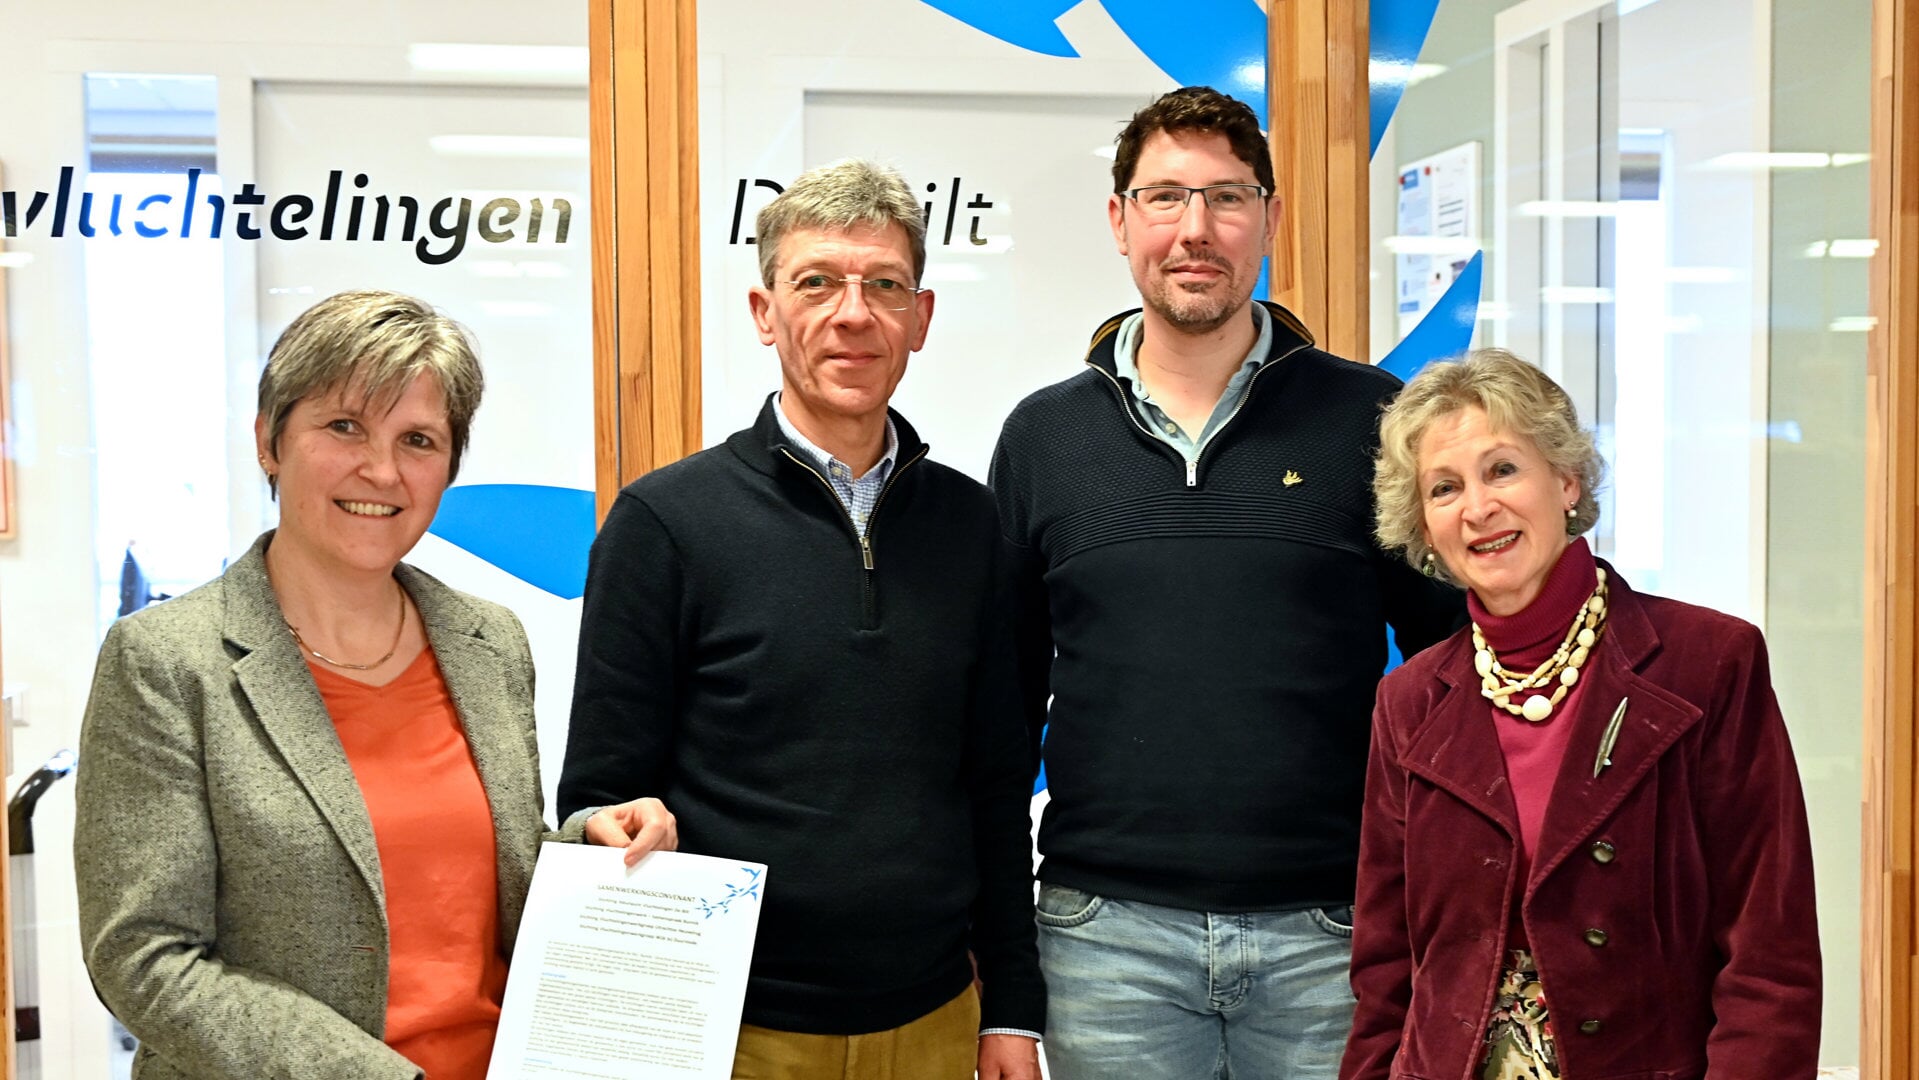 De voorzitters van de vluchtelingenwerkorganisaties v.l.n.r.: Marieke Spijkstra (De Bilt), Gerard Frank Sollman (Utrechtse Heuvelrug), Steven van Vulpen (Bunnik) en Heidi Hamers (Wijk bij Duurstede). (foto Bob van der Wilt)